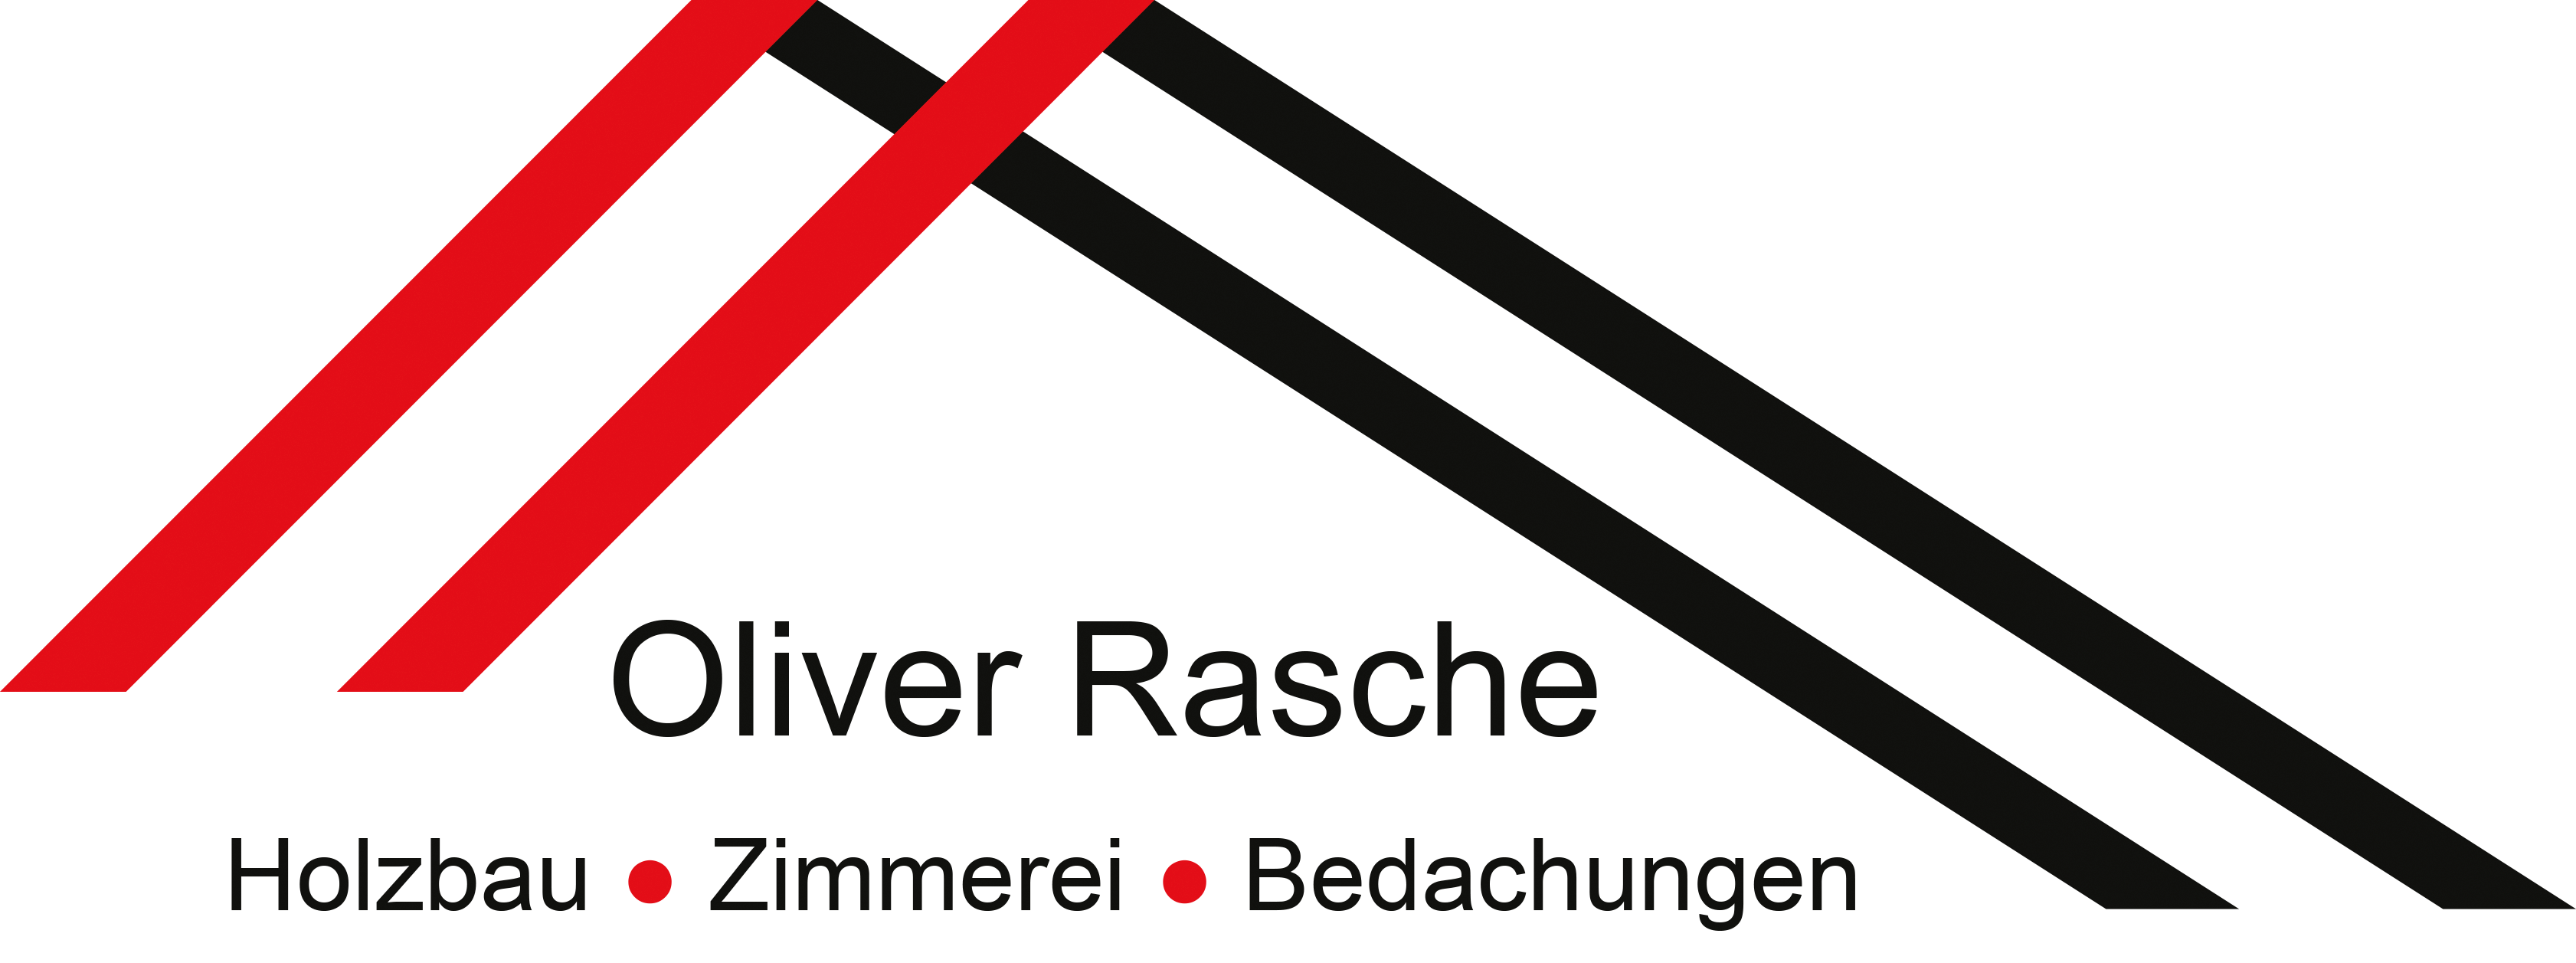 Oliver Rasche Holzbau-Zimmerei-Bedachungen GmbH